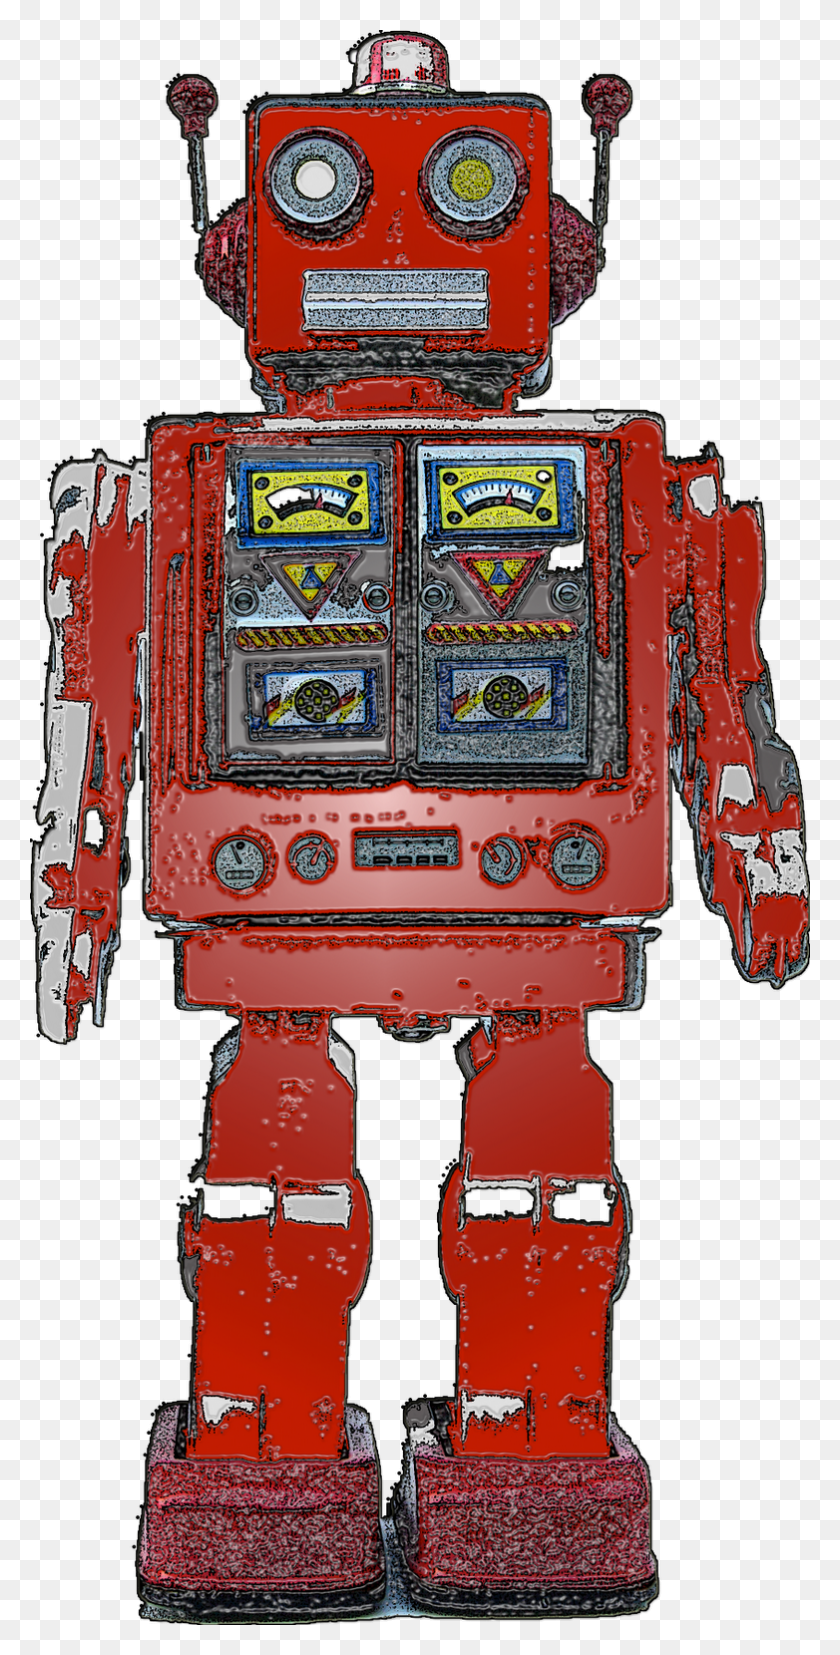 782x1600 Descargar Png Imagen De Google Para Robot Retro Http, Máquina De Juego Arcade, Bomba De Gas, Bomba Hd Png